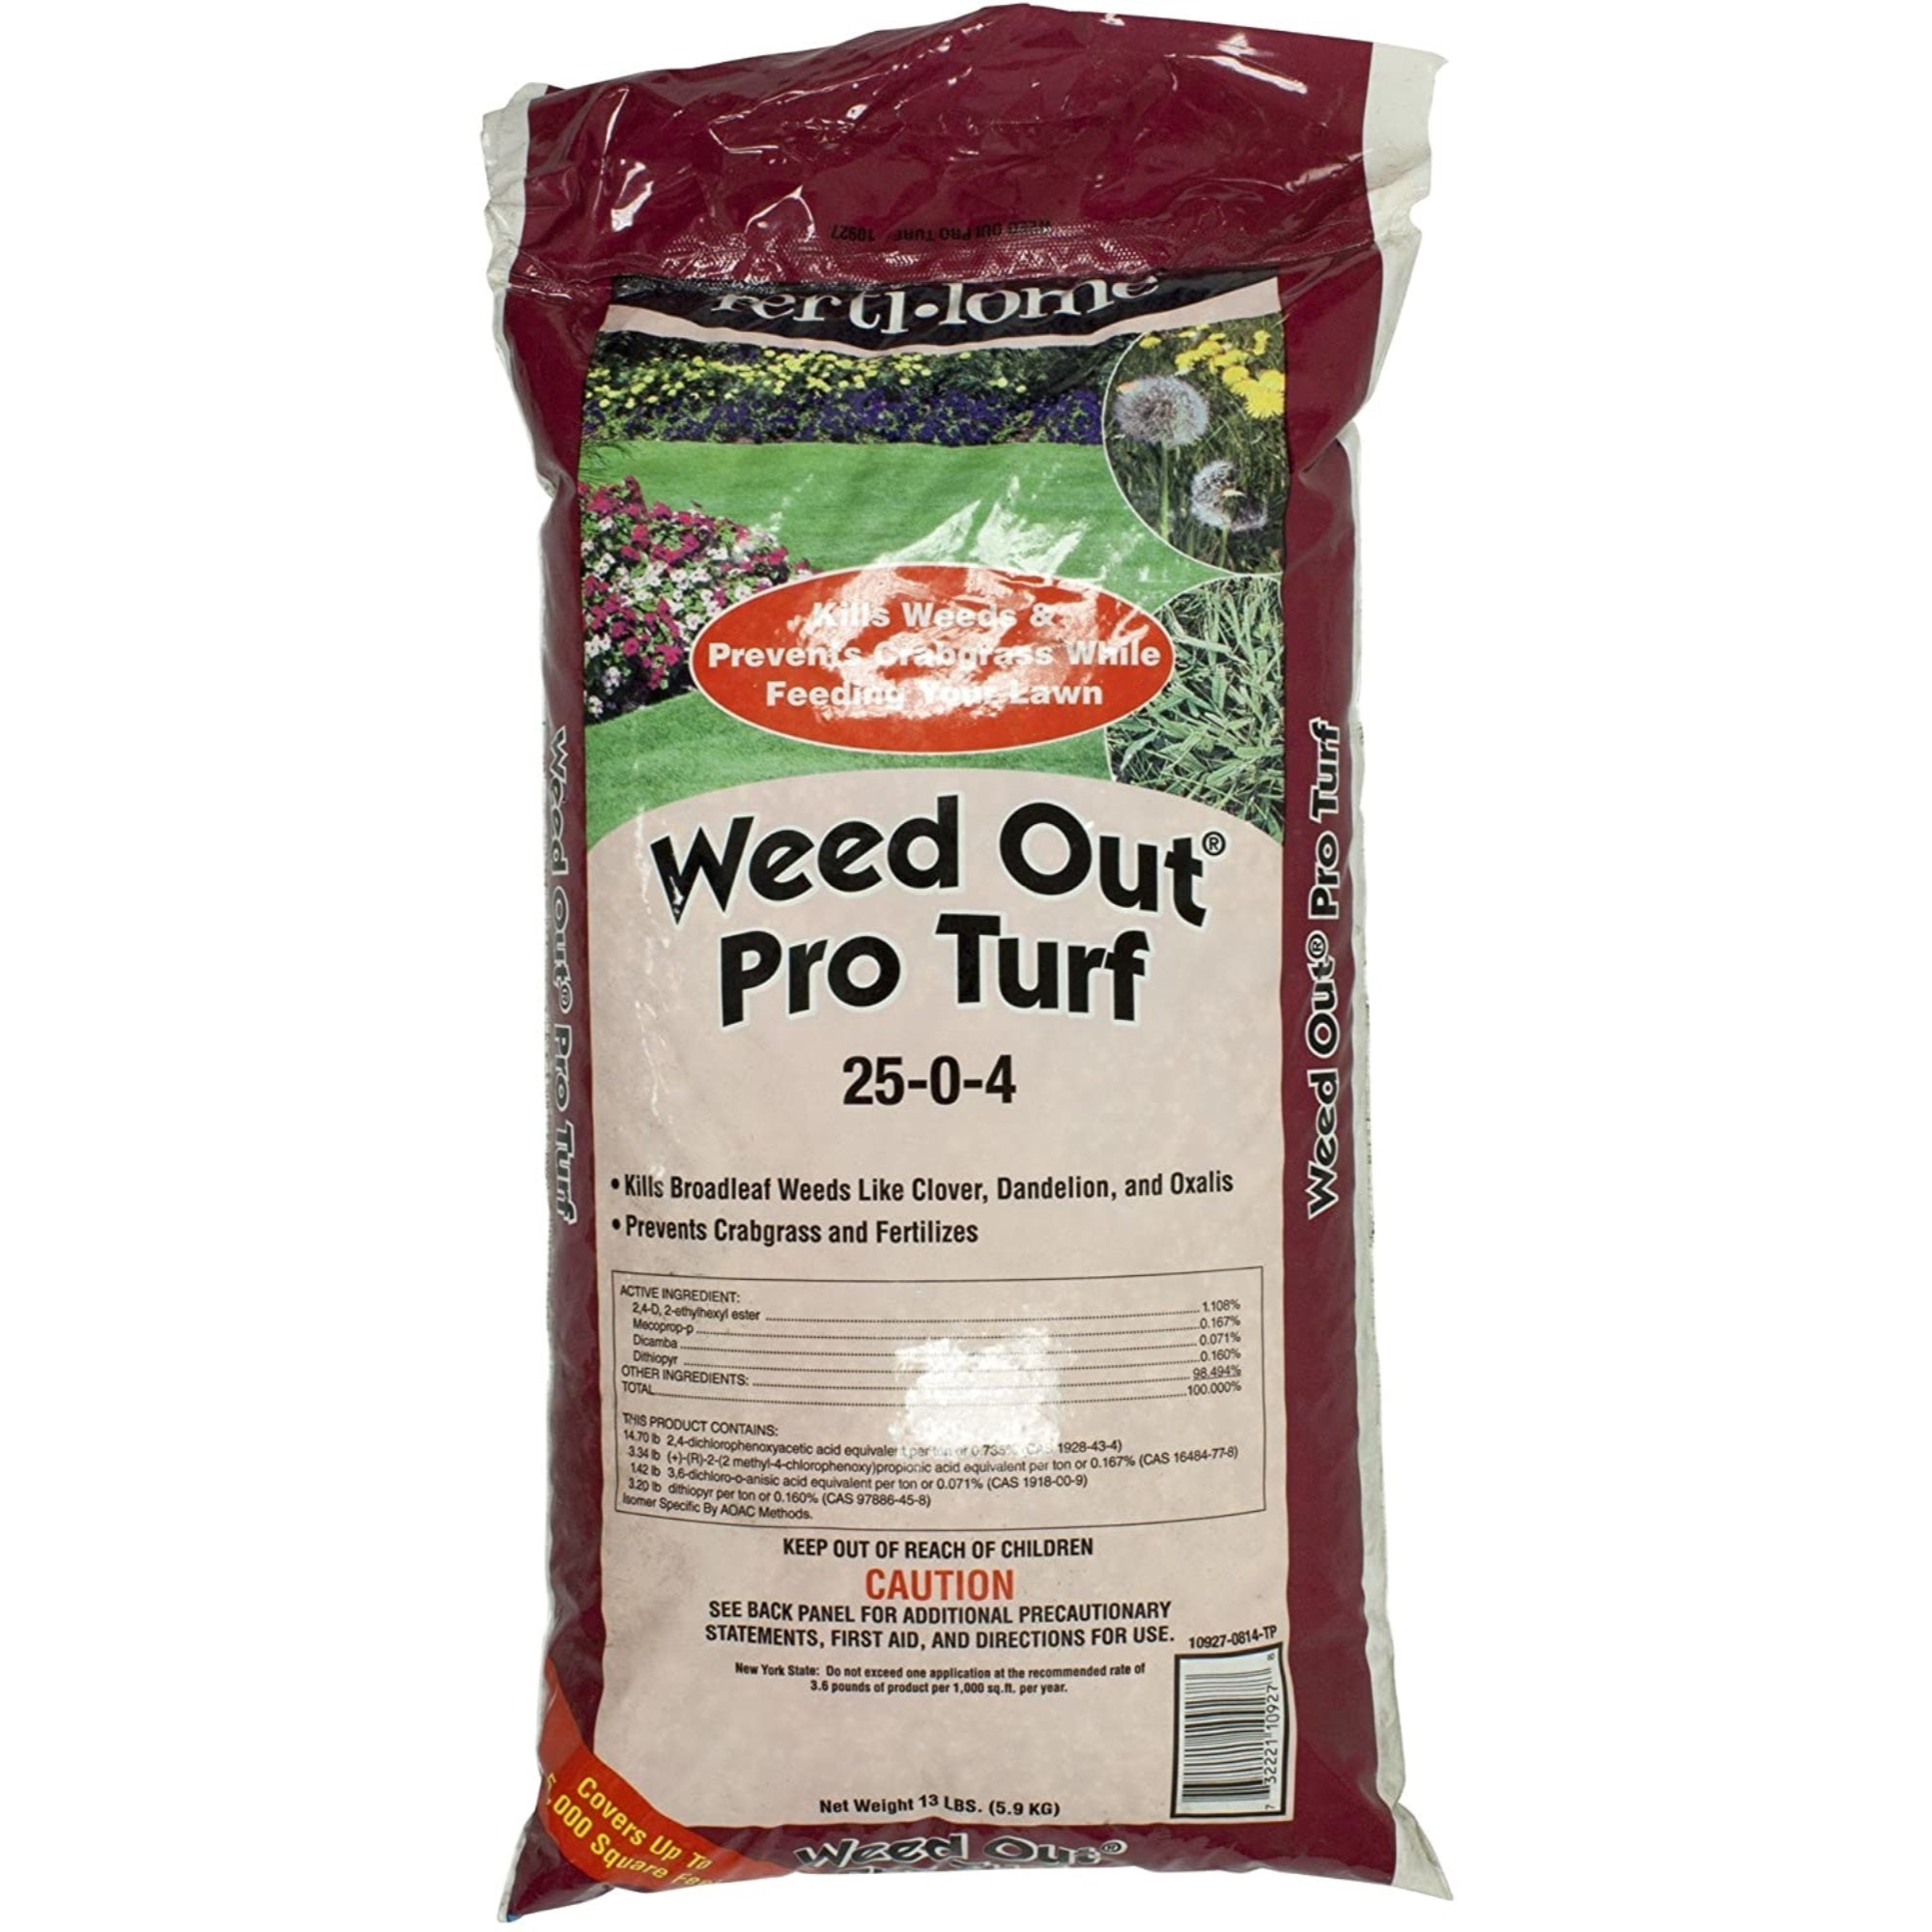 Fertilome Weed Out Pro Turf (25-0-4) Lawn Fertilizer - 13 Pound Bag